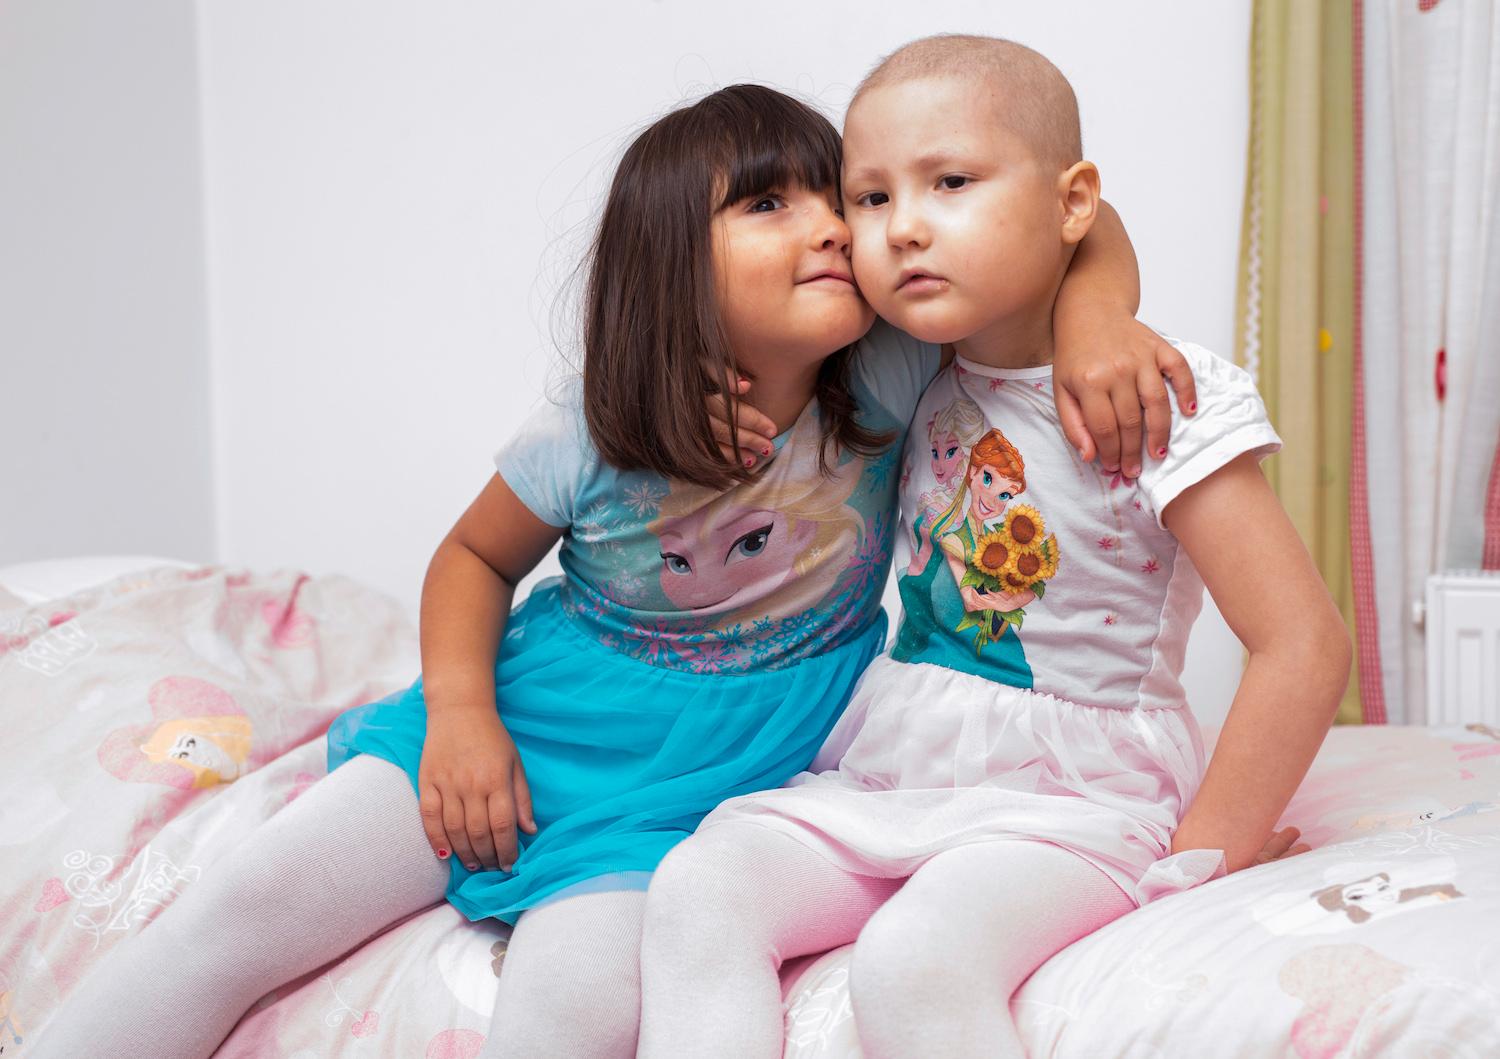 Tvillingarna Marlene och Mary,5 När Marlene var 2 år fick hon leukemi. I december 2014 var hon färdigbehandlad. Tre månader senare - i april 2015 - insjuknade tvillingsystern Mary i samma sjukdom.